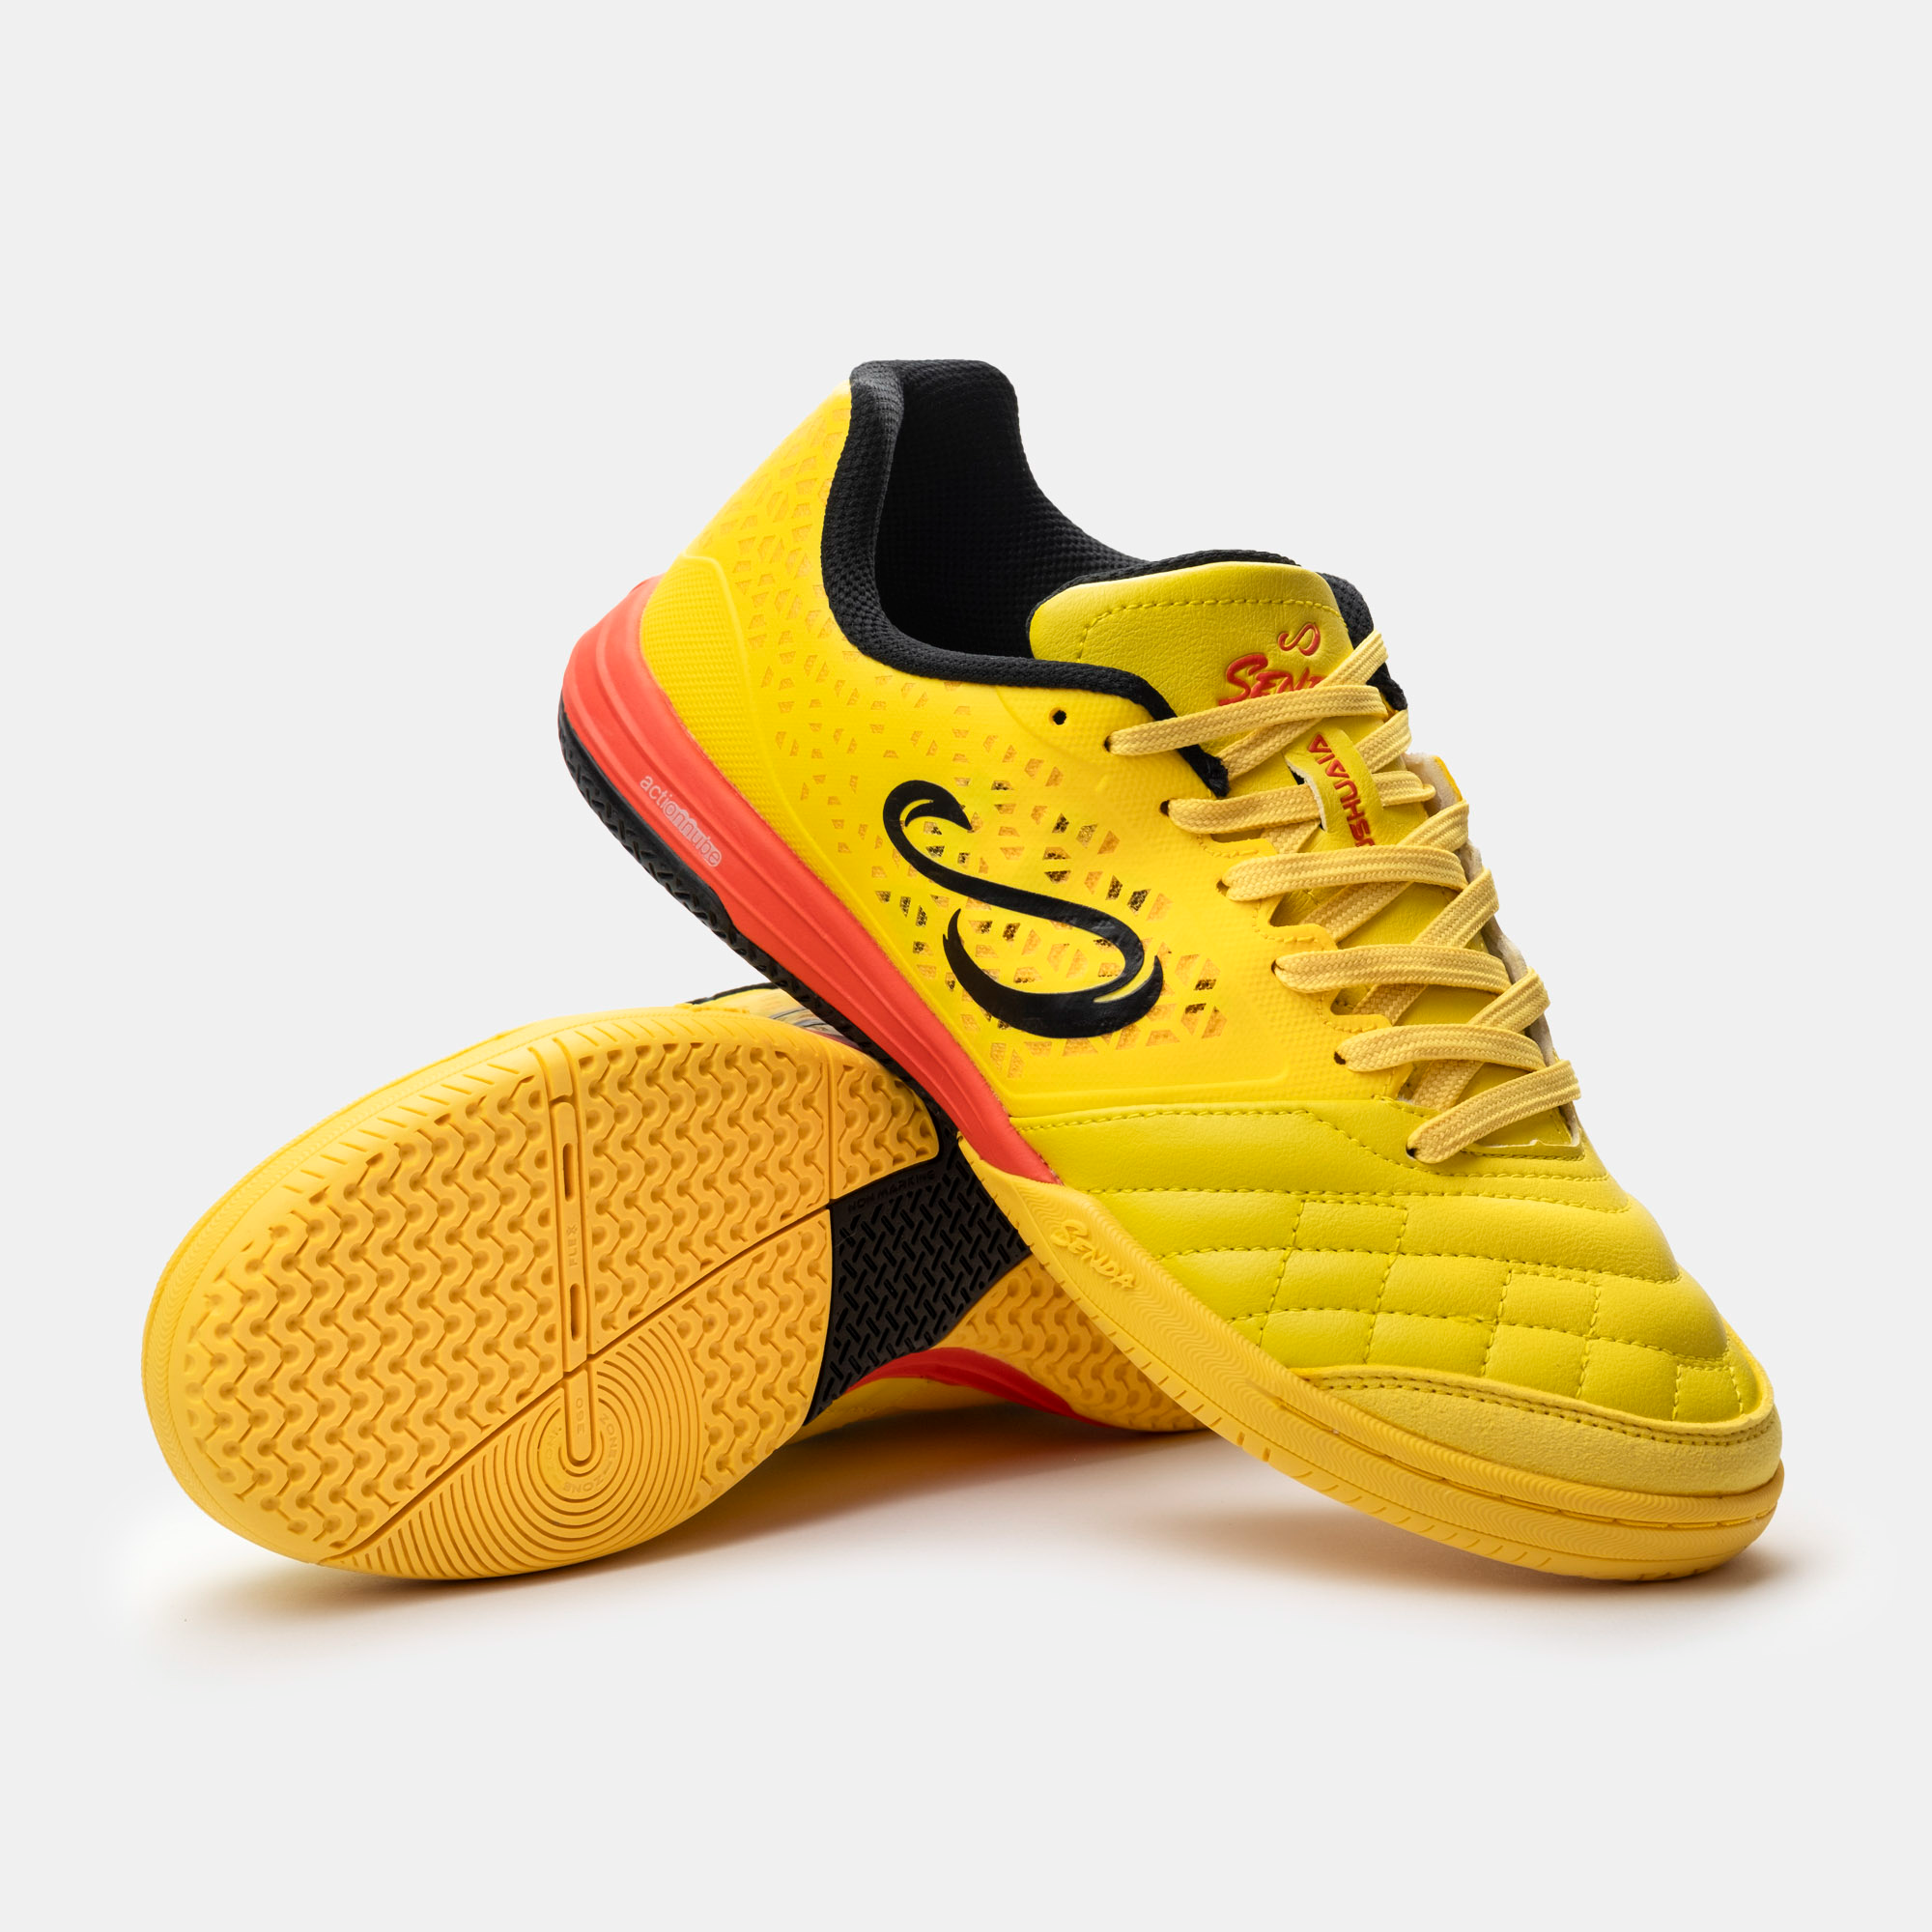 New color Senda Futsal Shoe  - Ushuaia 2.0 Yellow